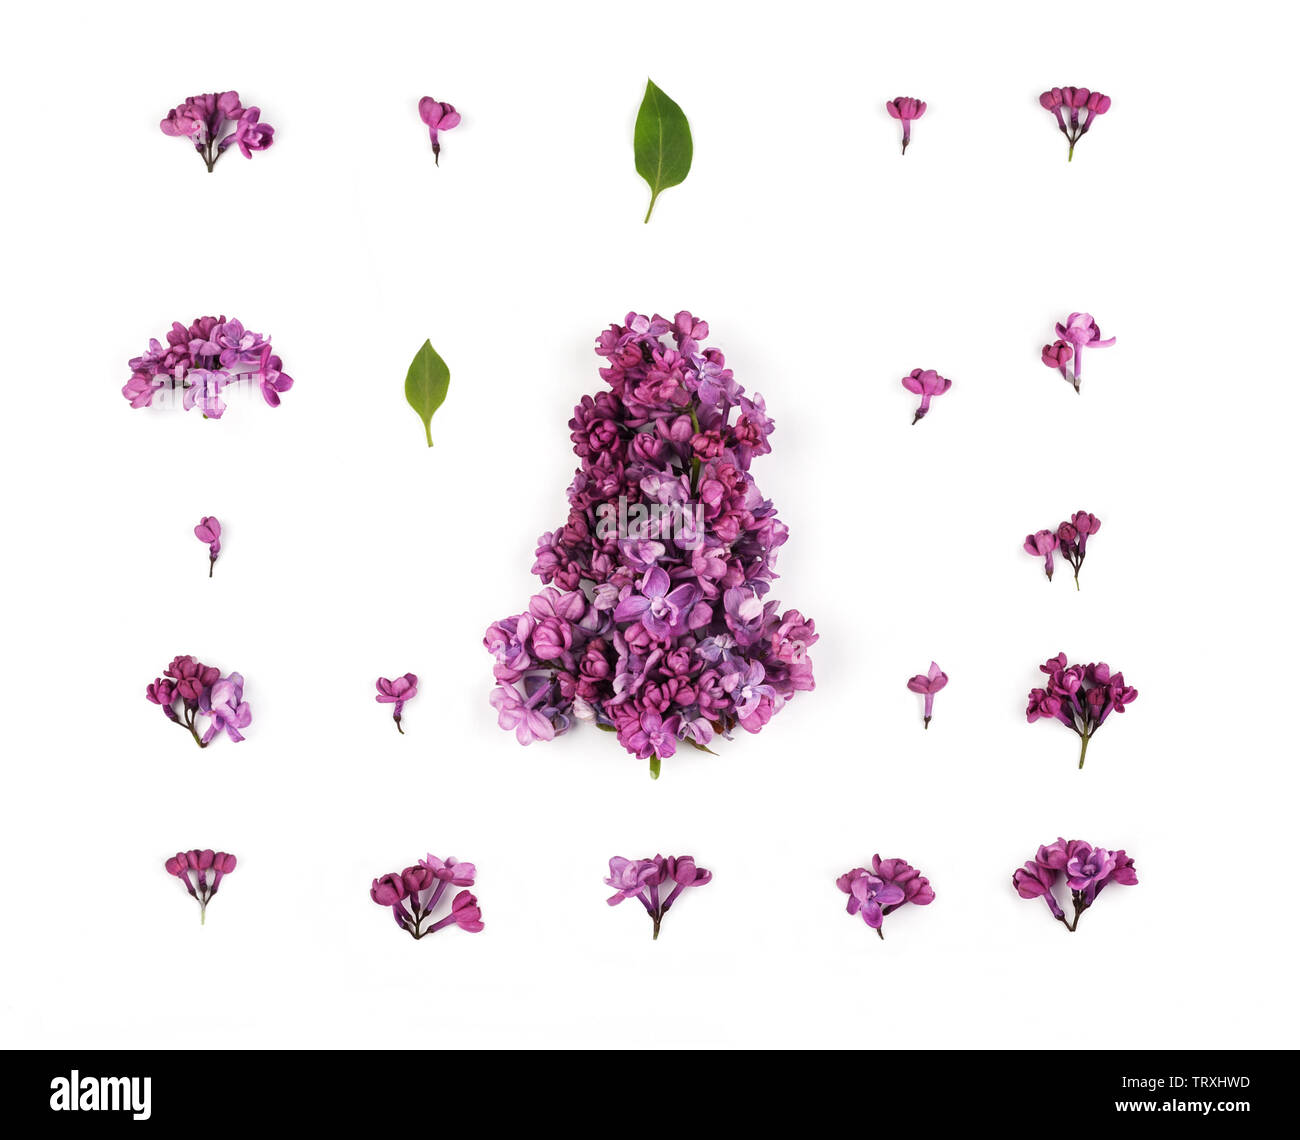 Kreative Gestaltung aus Lila Lila Blumen und Blüten auf dem weißen Hintergrund. Florales Muster im minimalistischen Stil. Flach, Ansicht von oben. Stockfoto